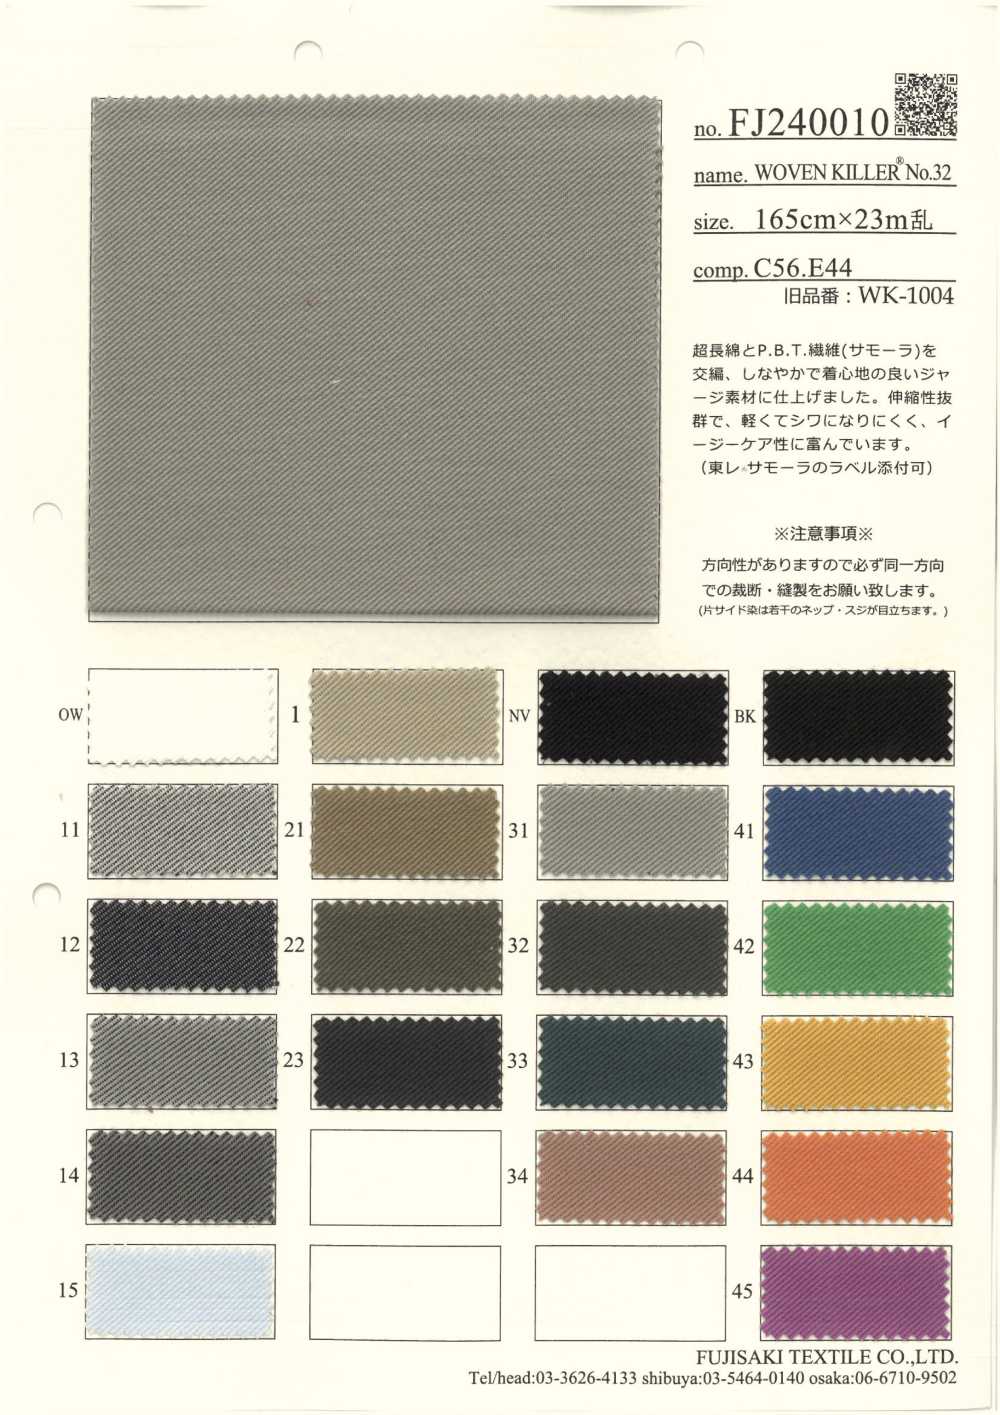 FJ240010 WOVWEN KILLER[Textile / Fabric] Fujisaki Textile